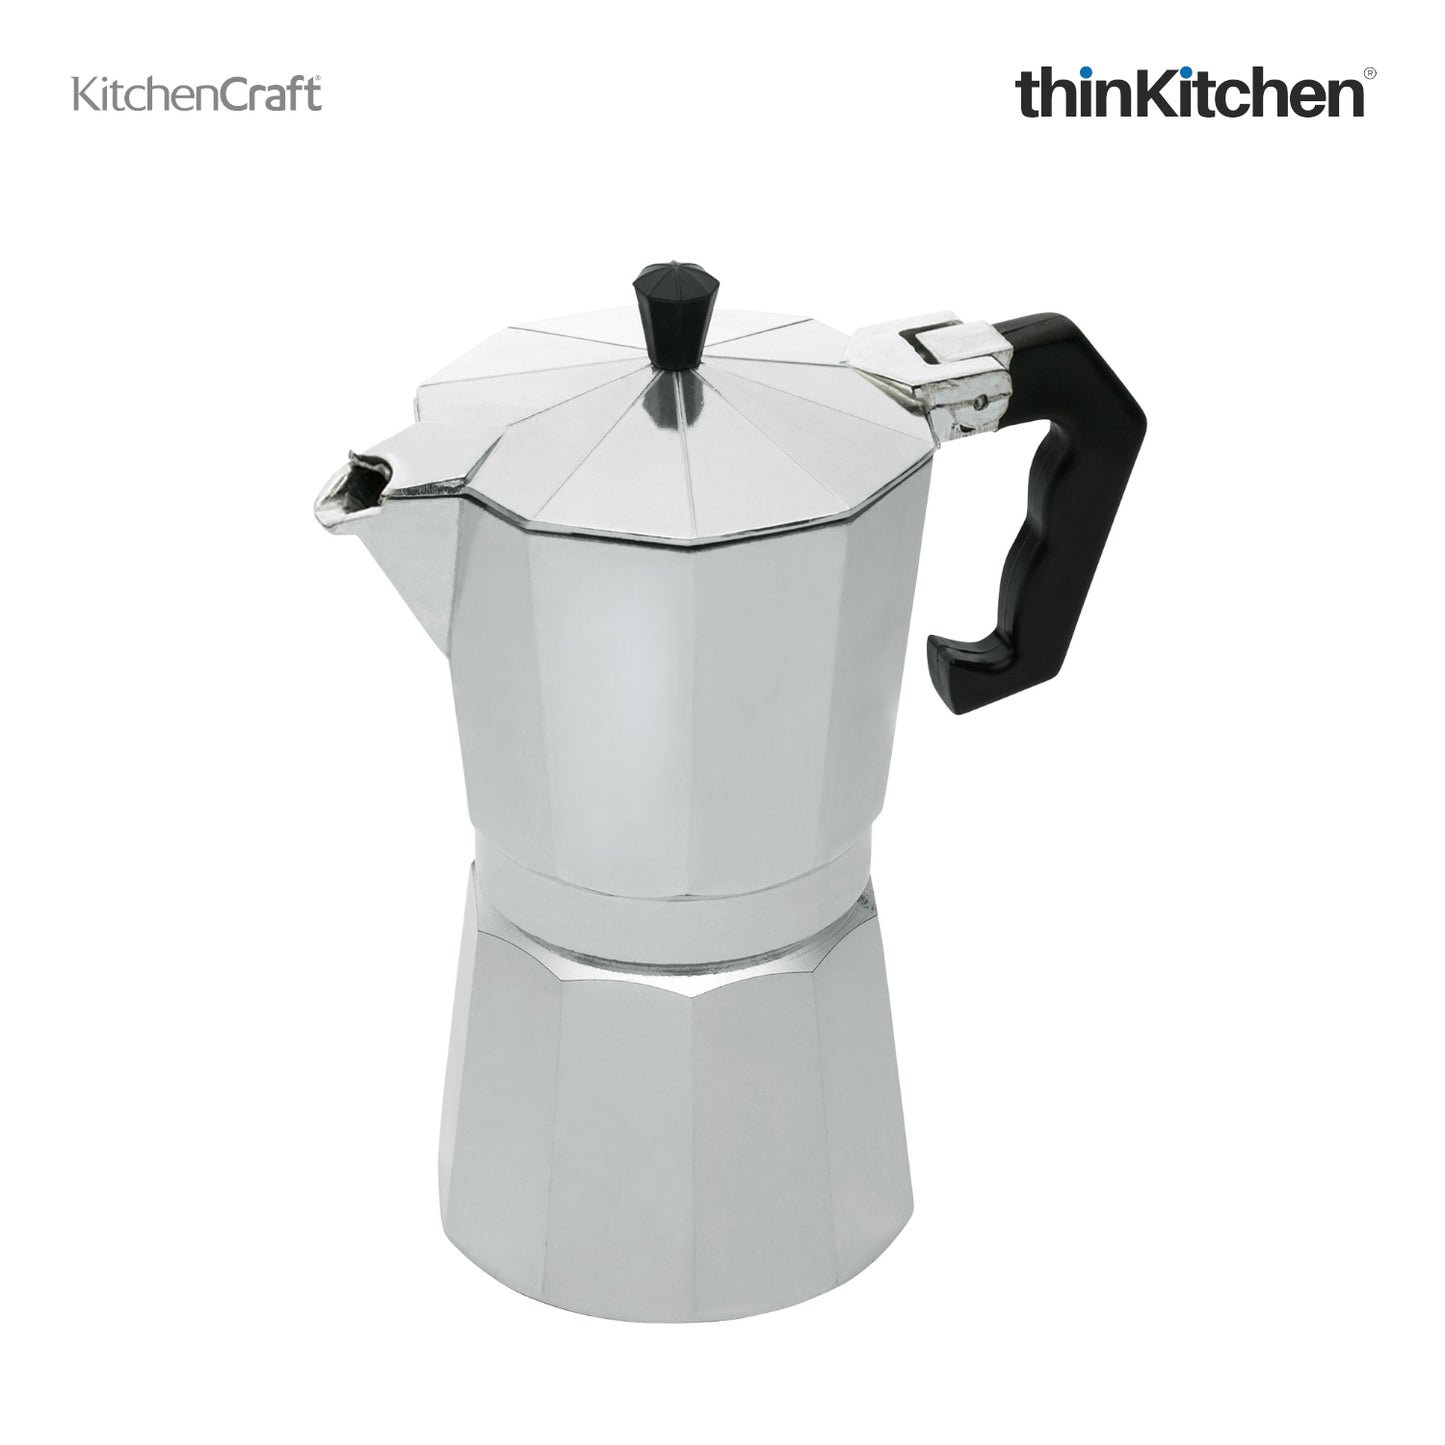 Kitchencraft Le Xpress Italian Style 6 Cup Espresso Maker